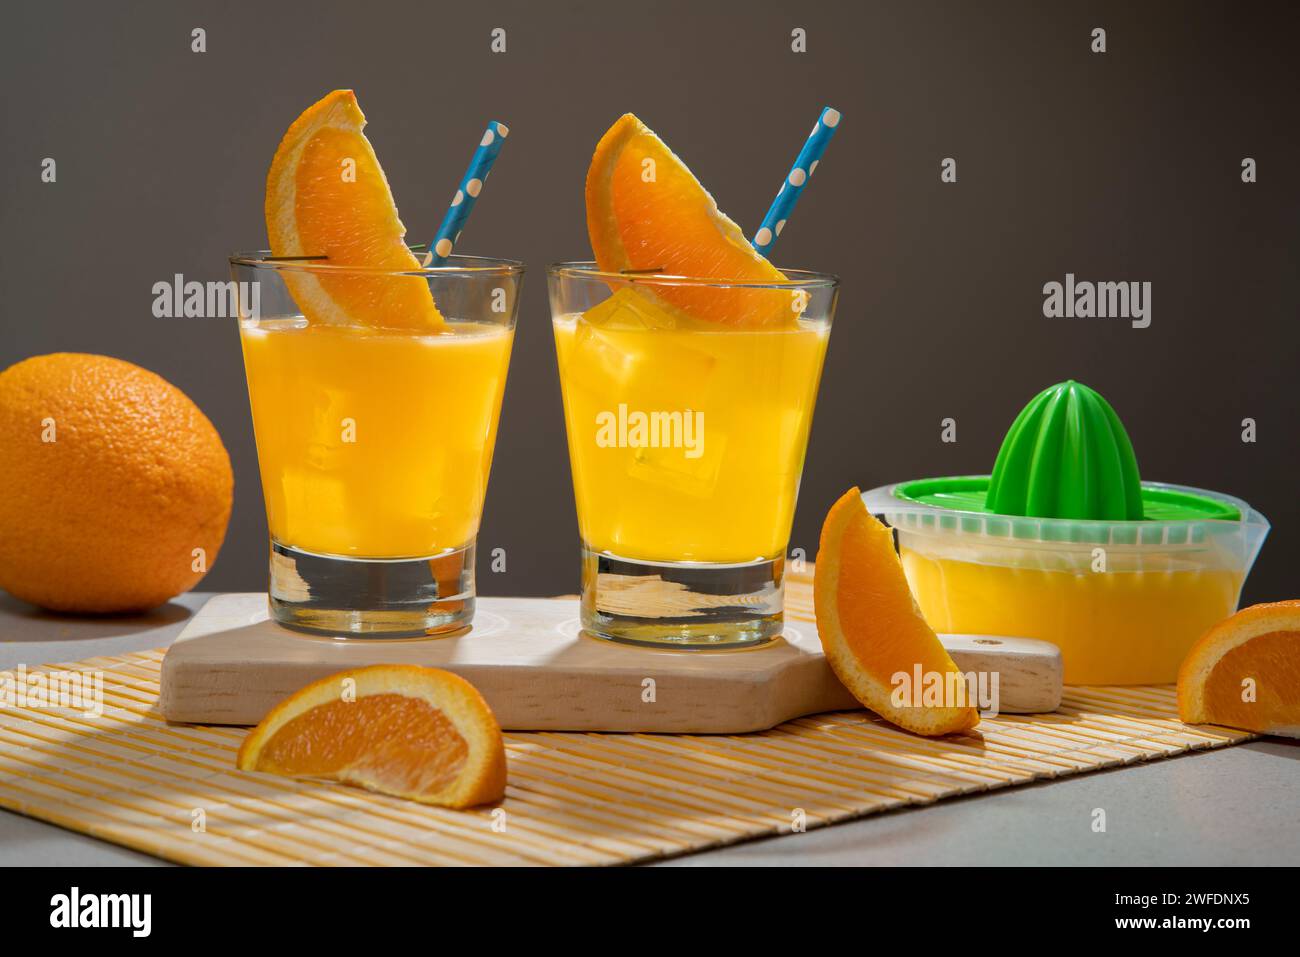 Deux cocktails jaunes en verre rempli de glace garni de tranche d'orange et sorbet sur une serviette en bambou avec des morceaux d'orange et un petit jus sque Banque D'Images